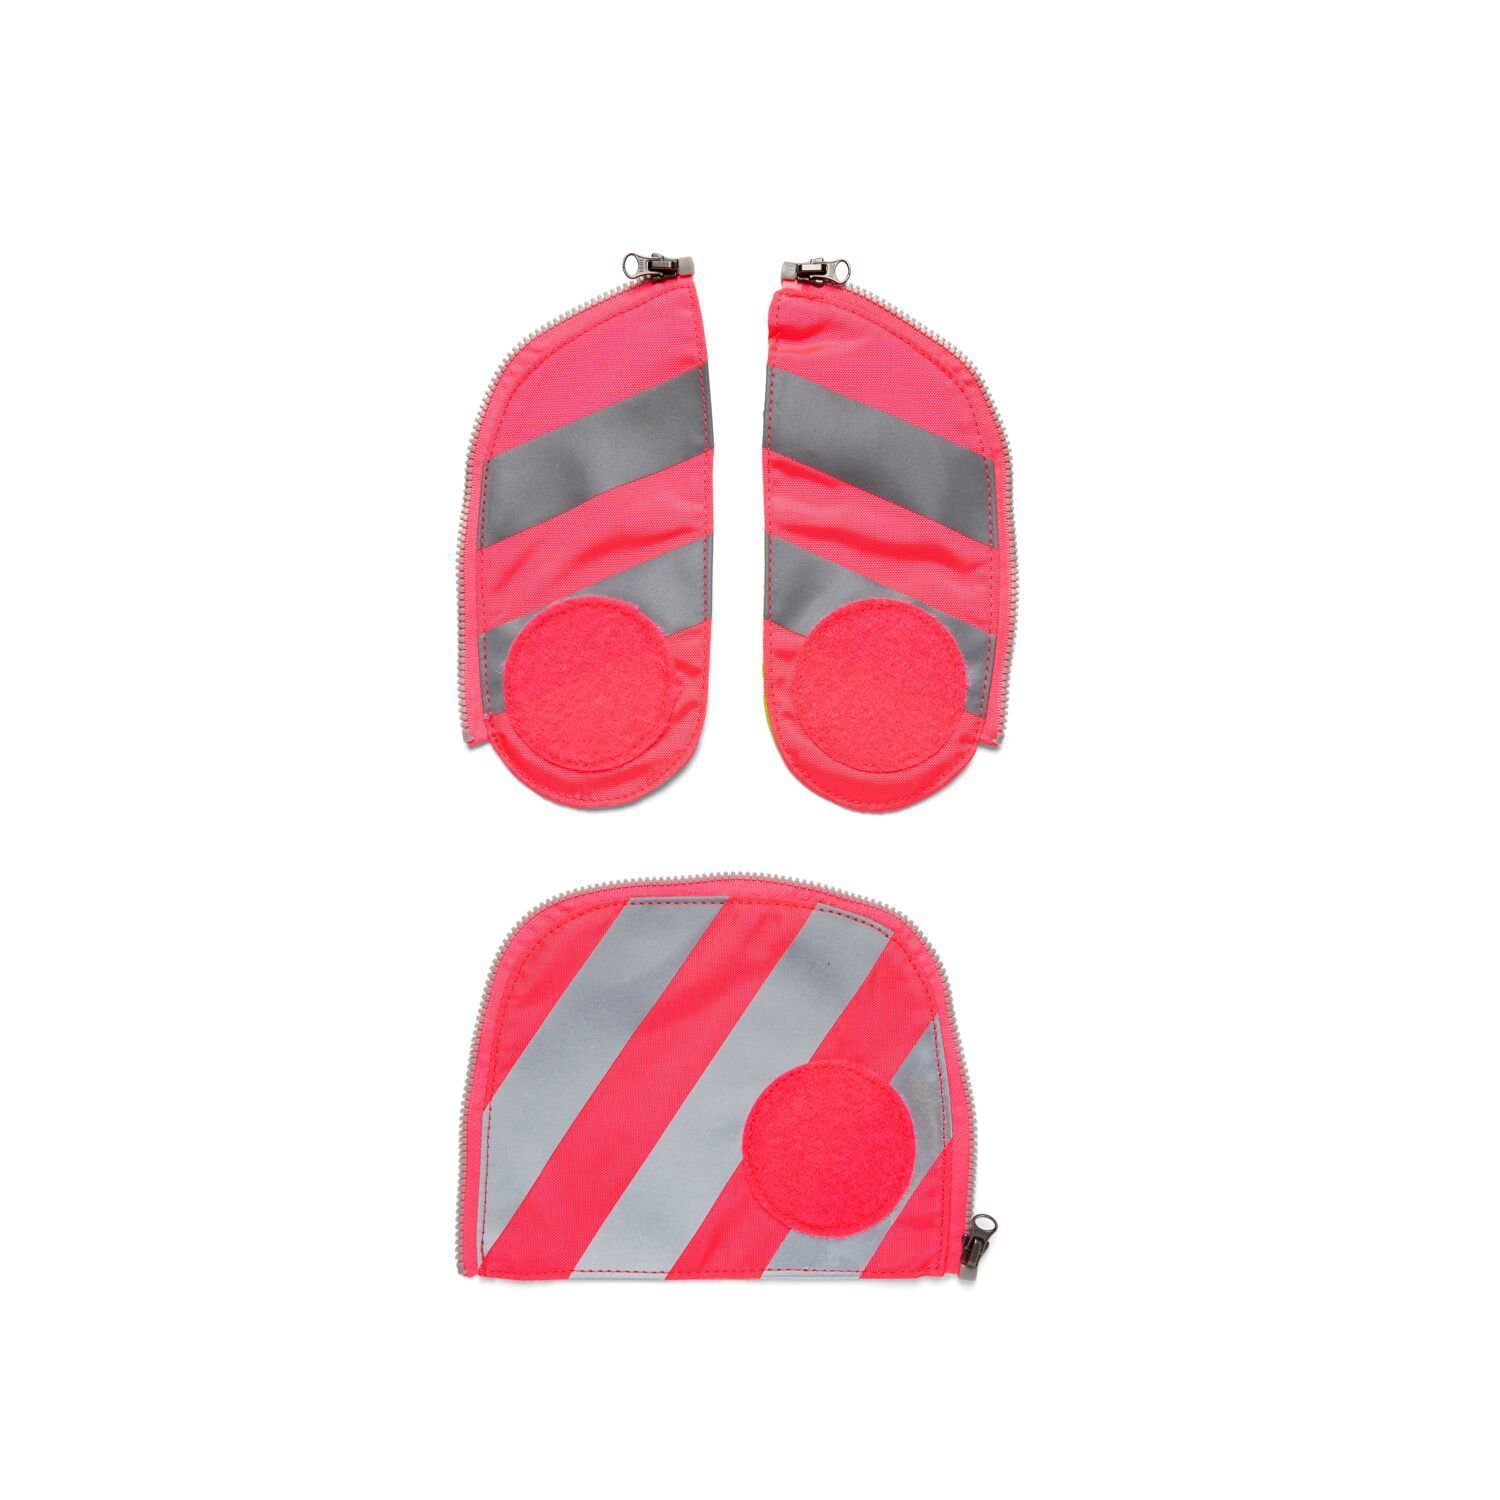 Fluo Stoff, fluoreszierender Sichtbarkeit Schulranzen Pink 002-511 Reflektorstreifen Zip-Set mit ergobag (3-teilig), Sicherheits-Set Pink